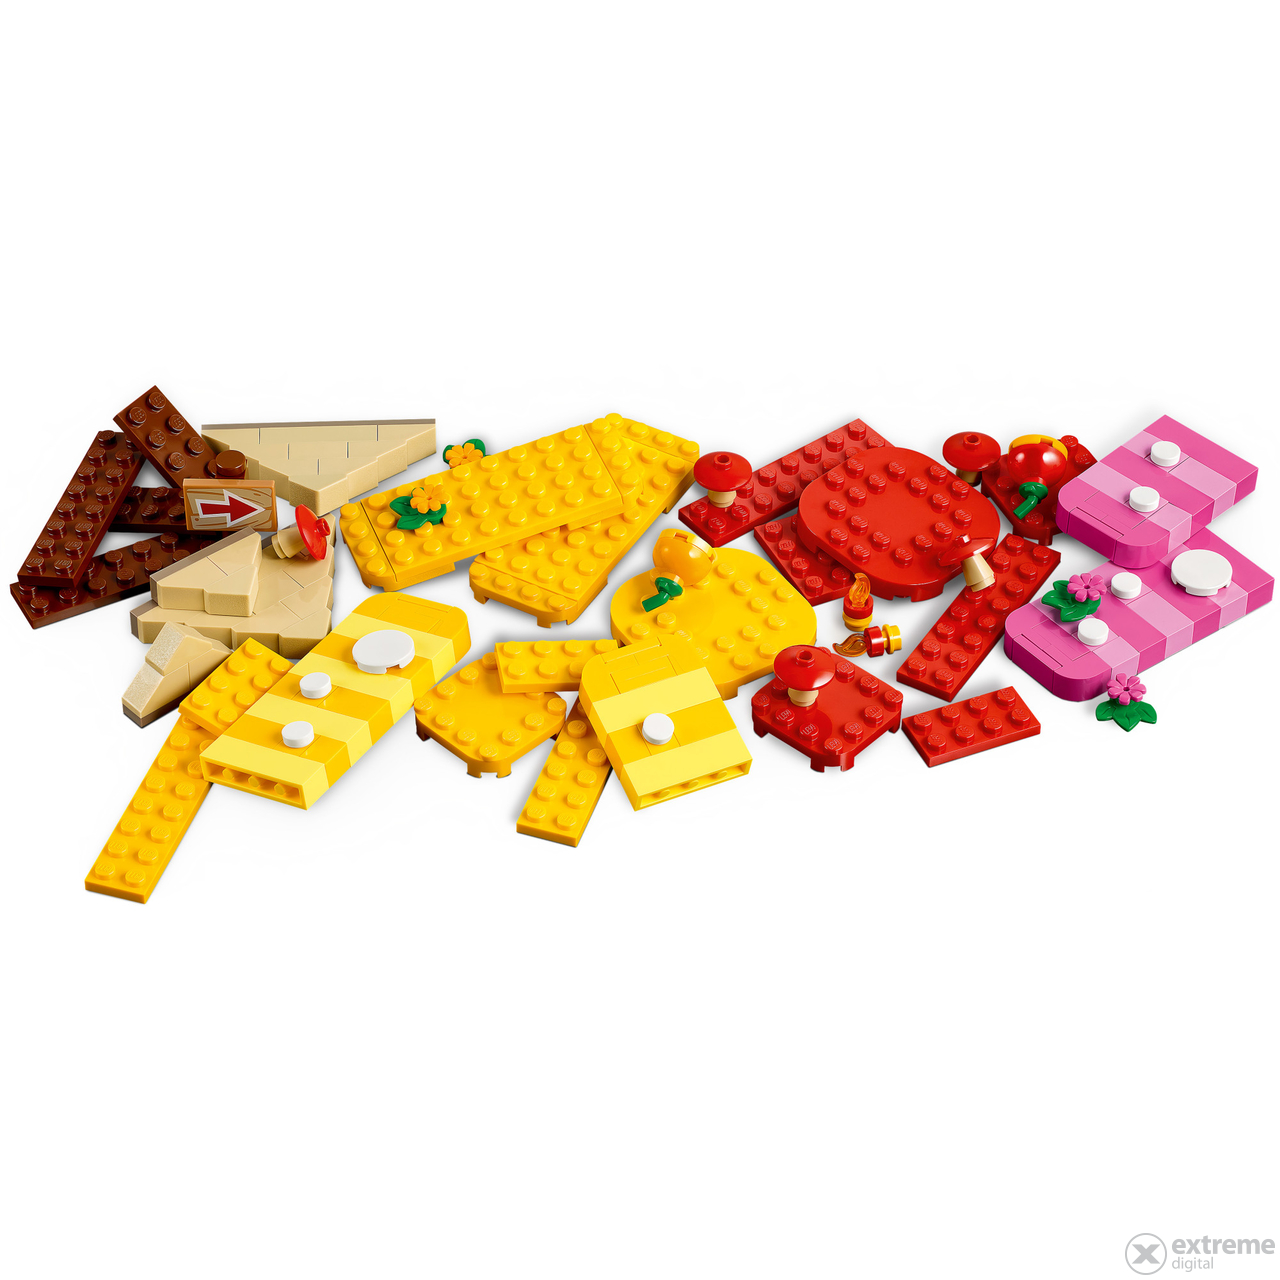 LEGO® Super Mario 71418 Kreativni set za gradnju, 588 dijelova (5702017415710)